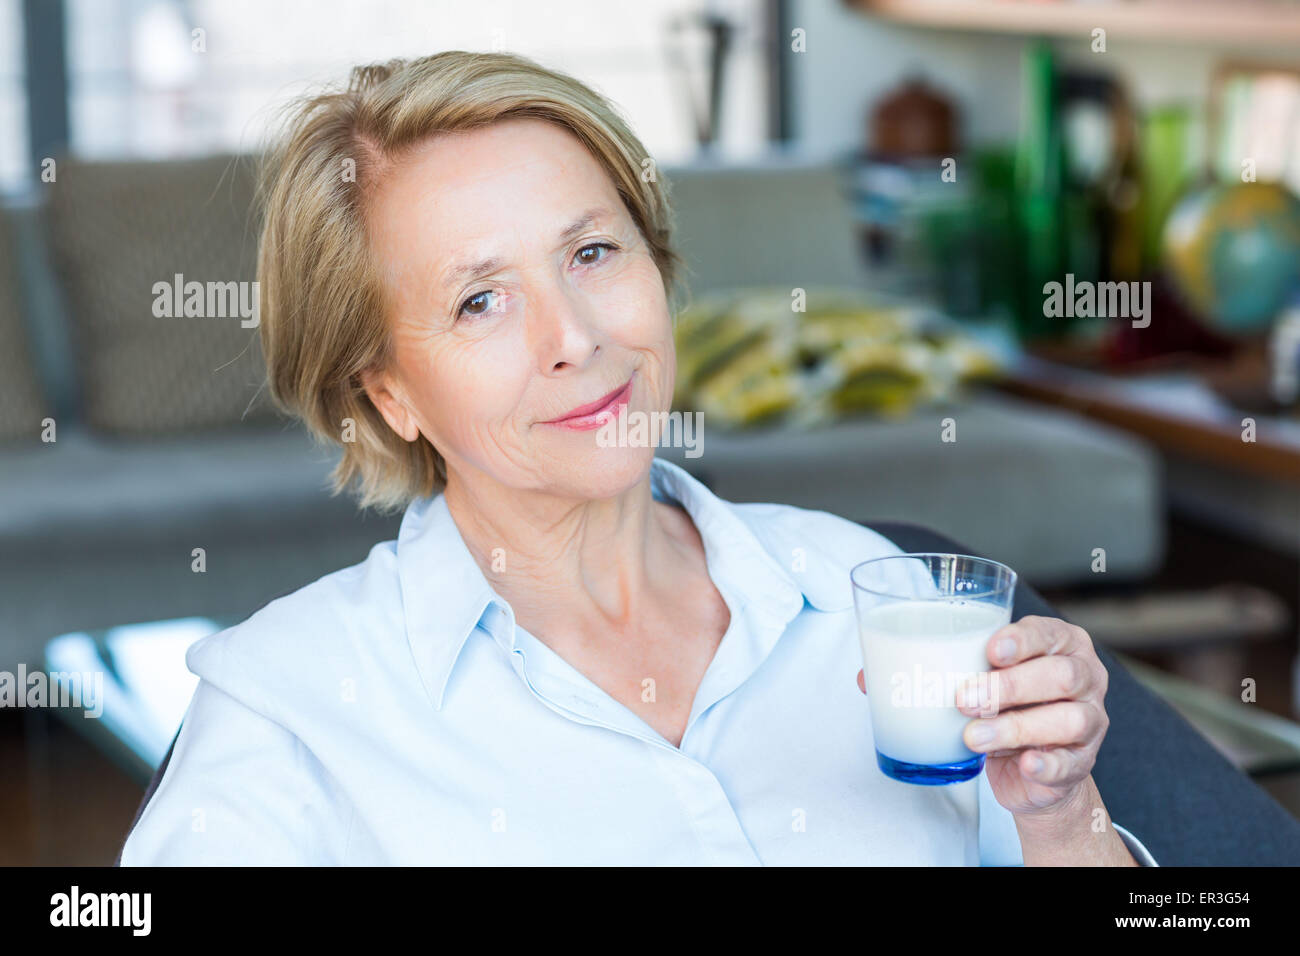 Woman drinking milk. Stock Photo